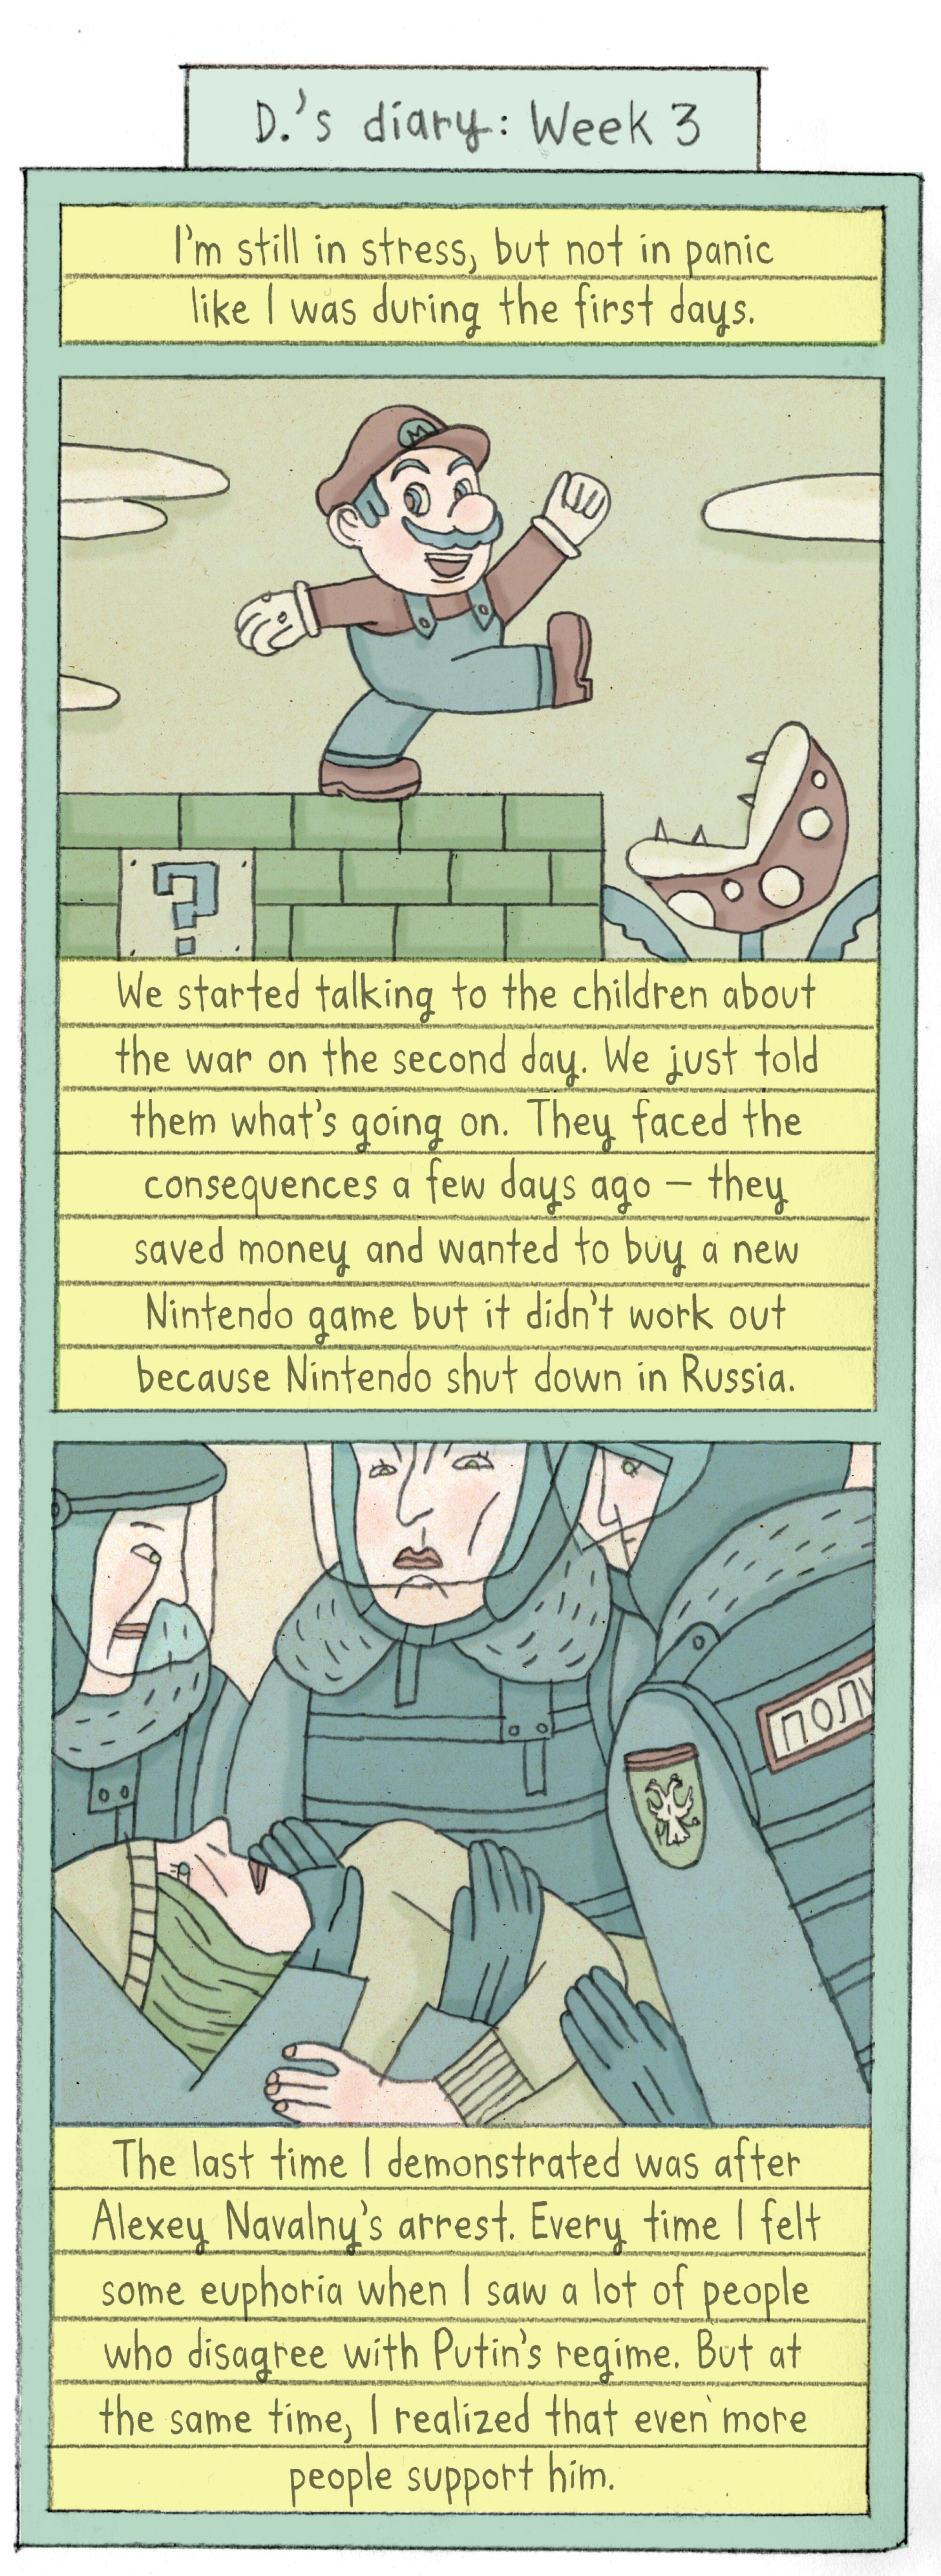 Comic describes talking to children, nintendo is shut down, demonstrating after Navalny's arrest.